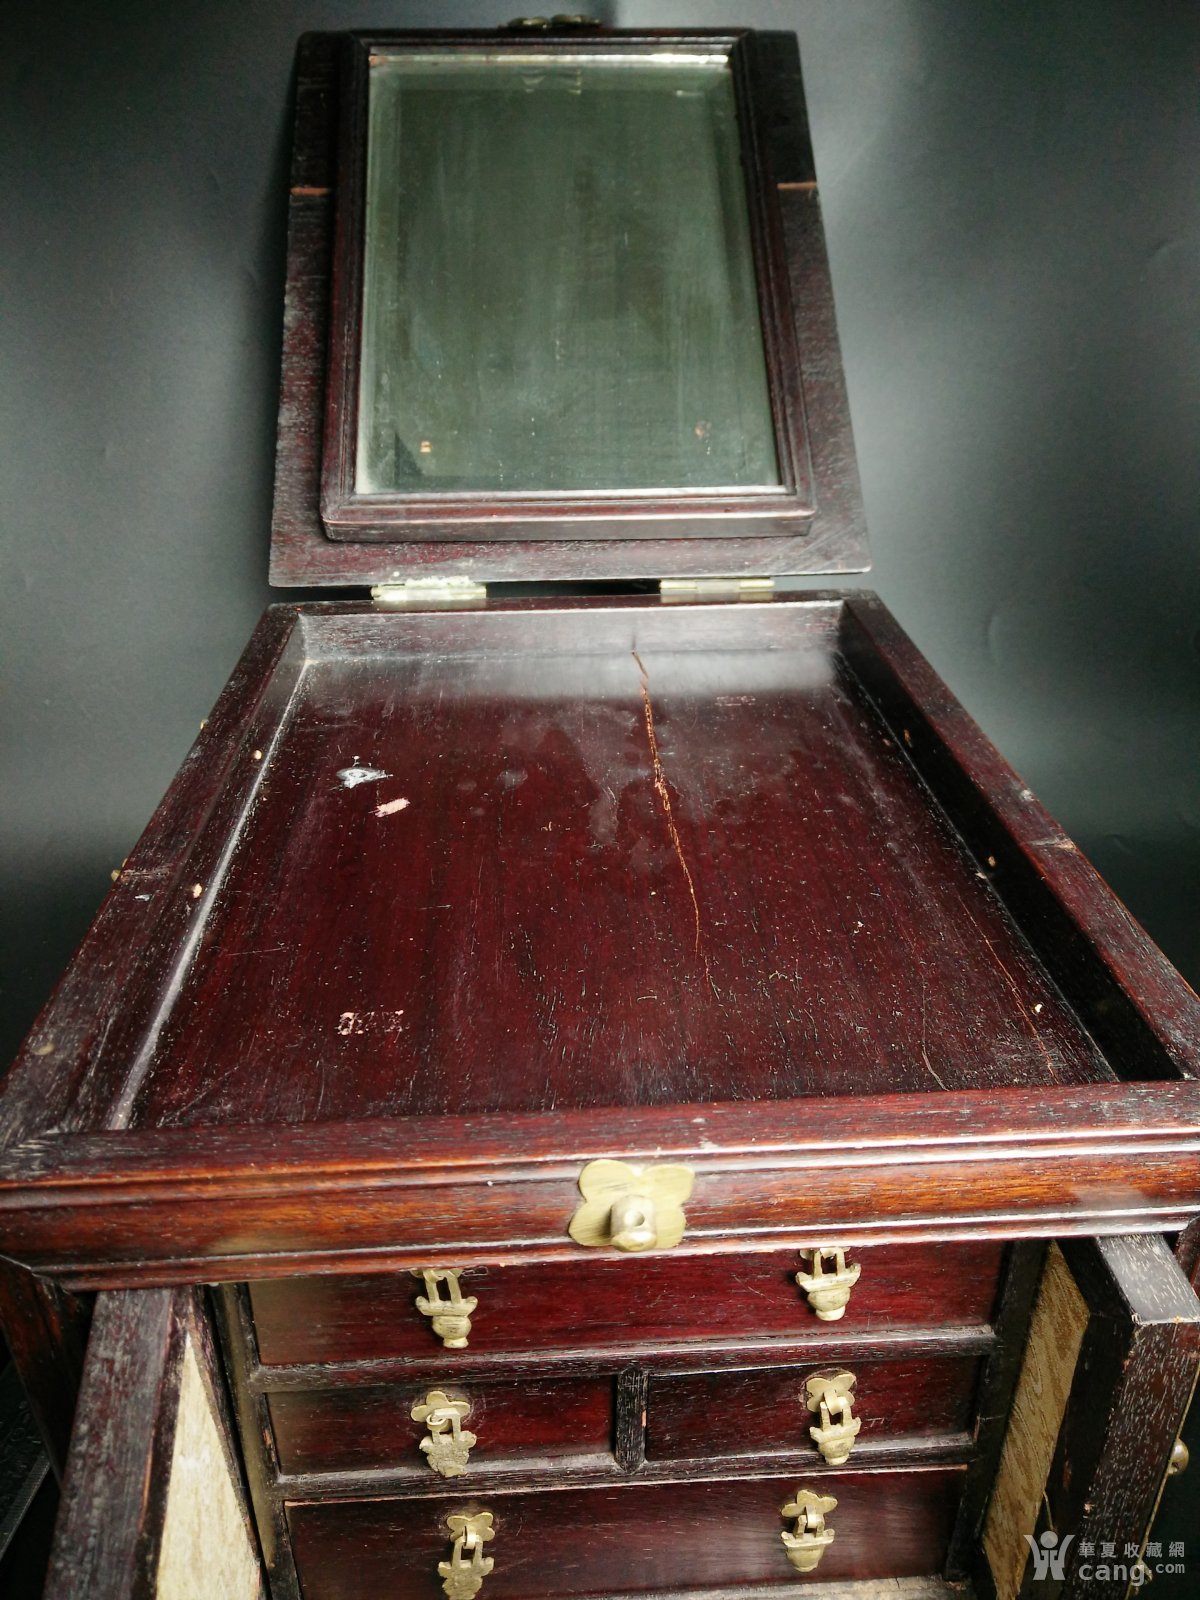 清代晚期 红木材质制作考究的大号梳妆箱子 化妆盒